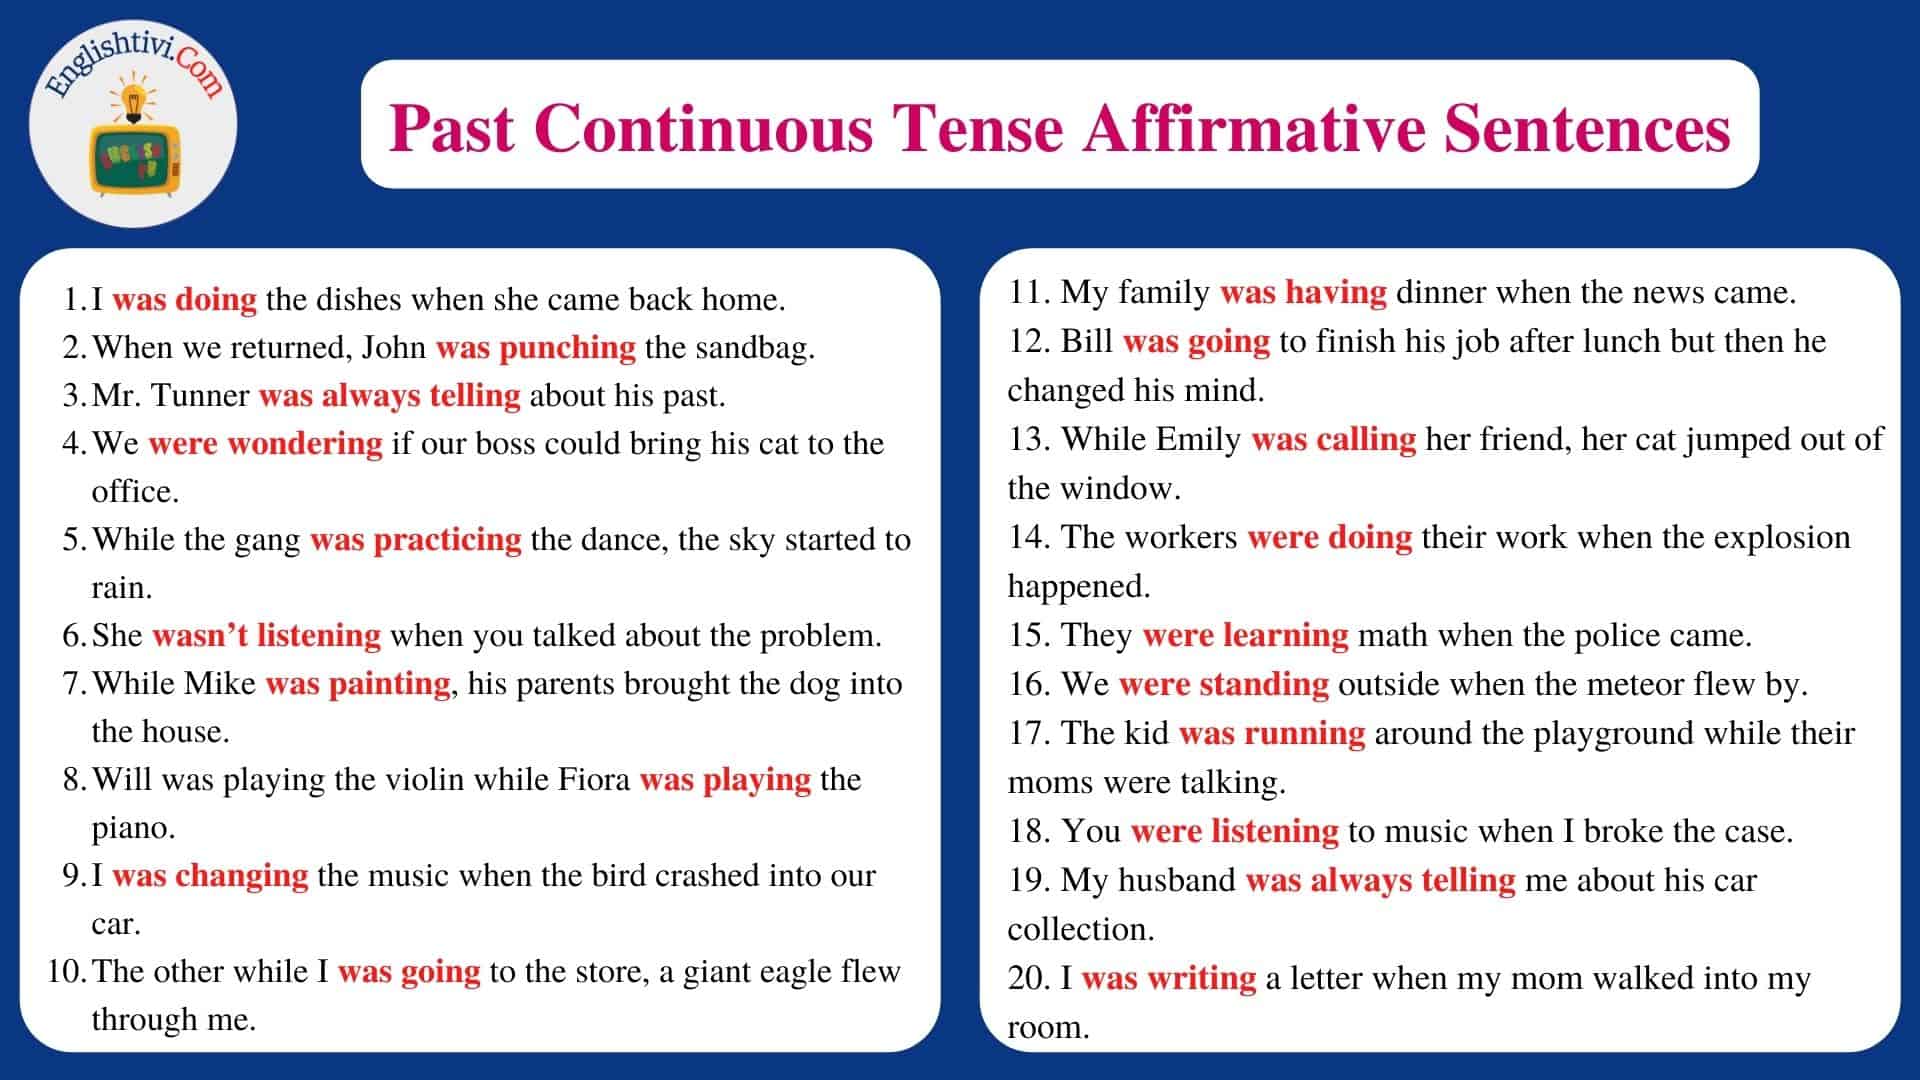 Past Continuous Tense Affirmative Sentences